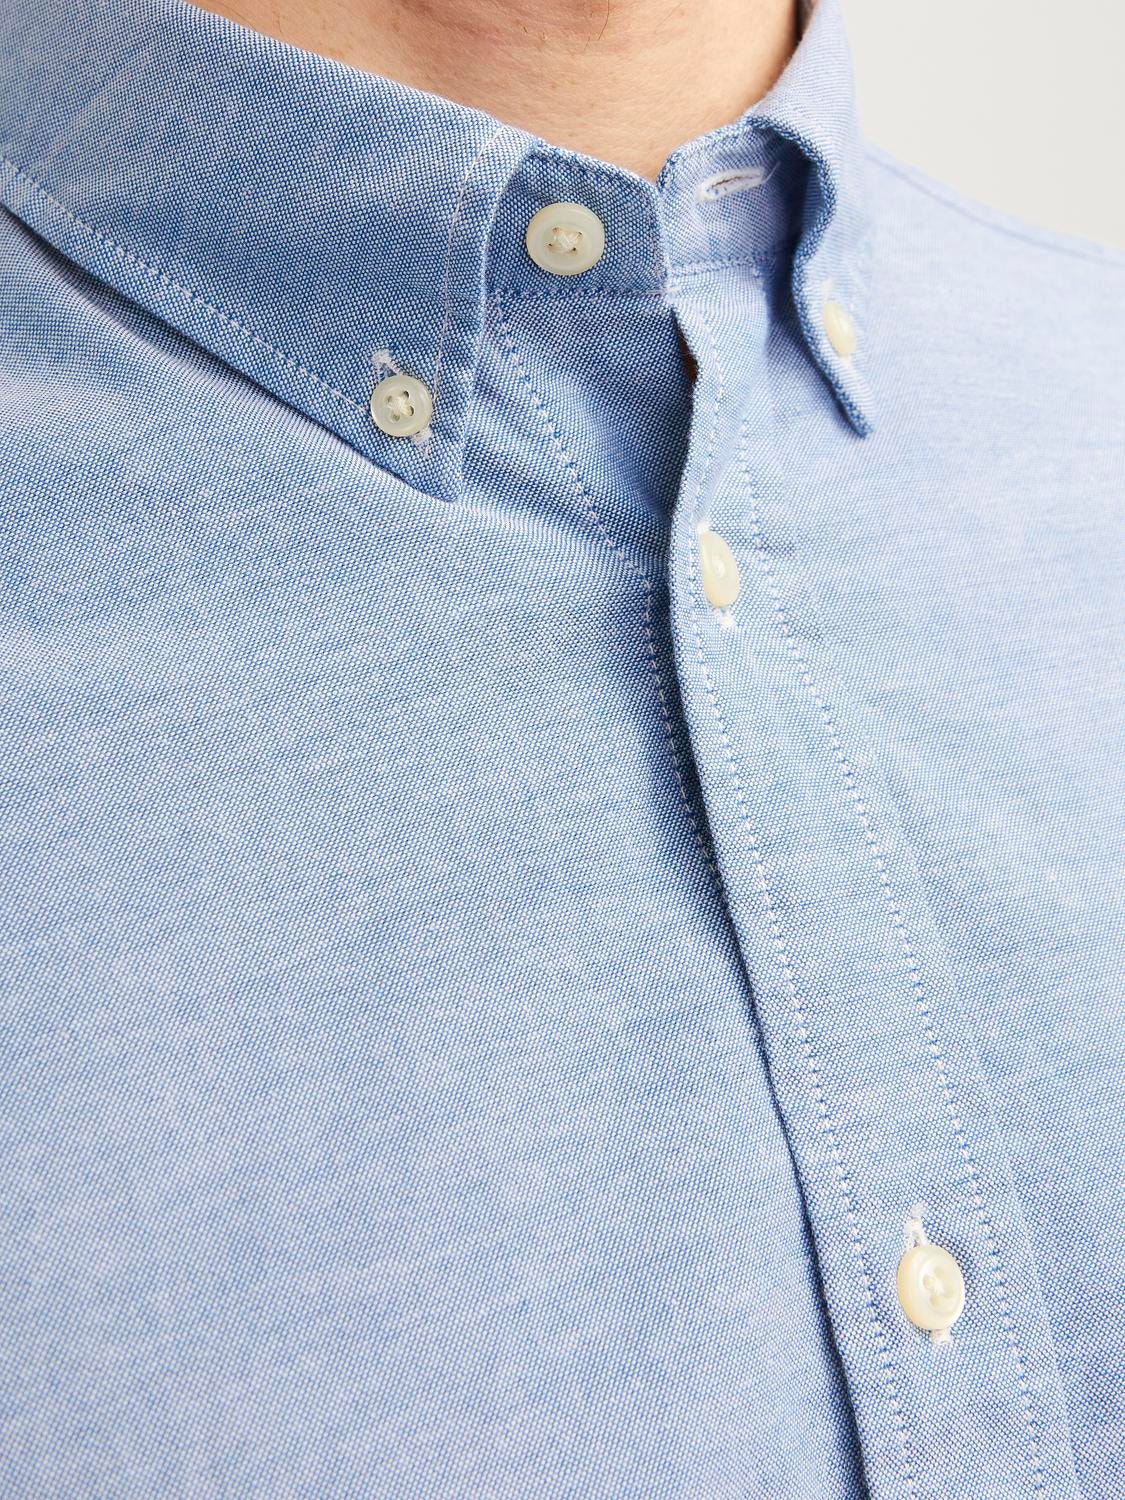 Jack & Jones Camisa Formal Slim Fit -Cashmere Blue - 12192150